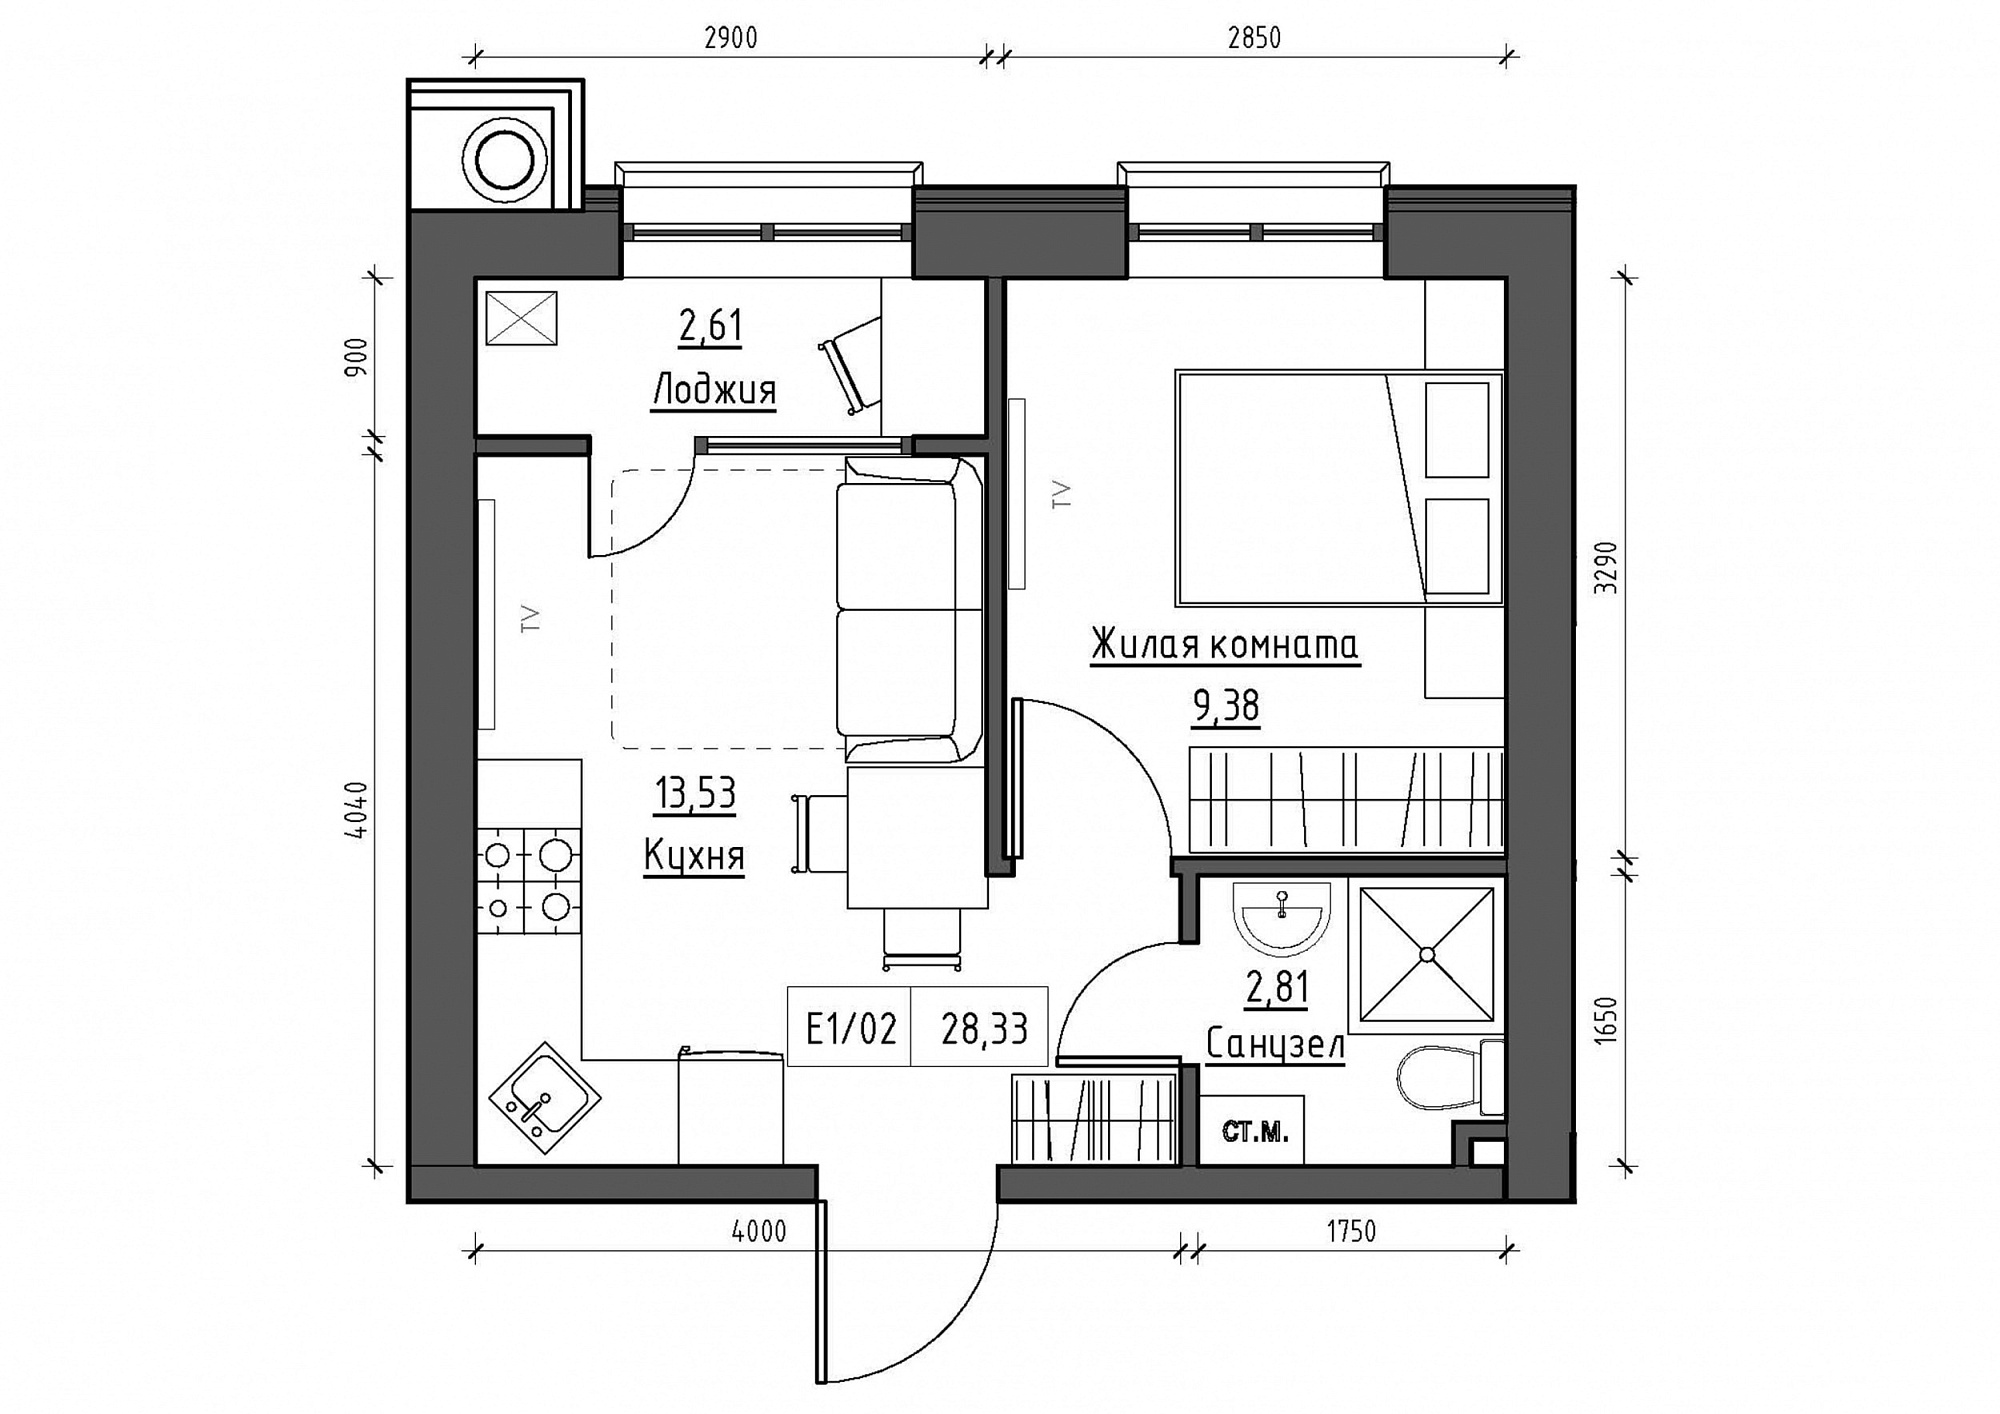 Планування 1-к квартира площею 28.33м2, KS-011-04/0015.